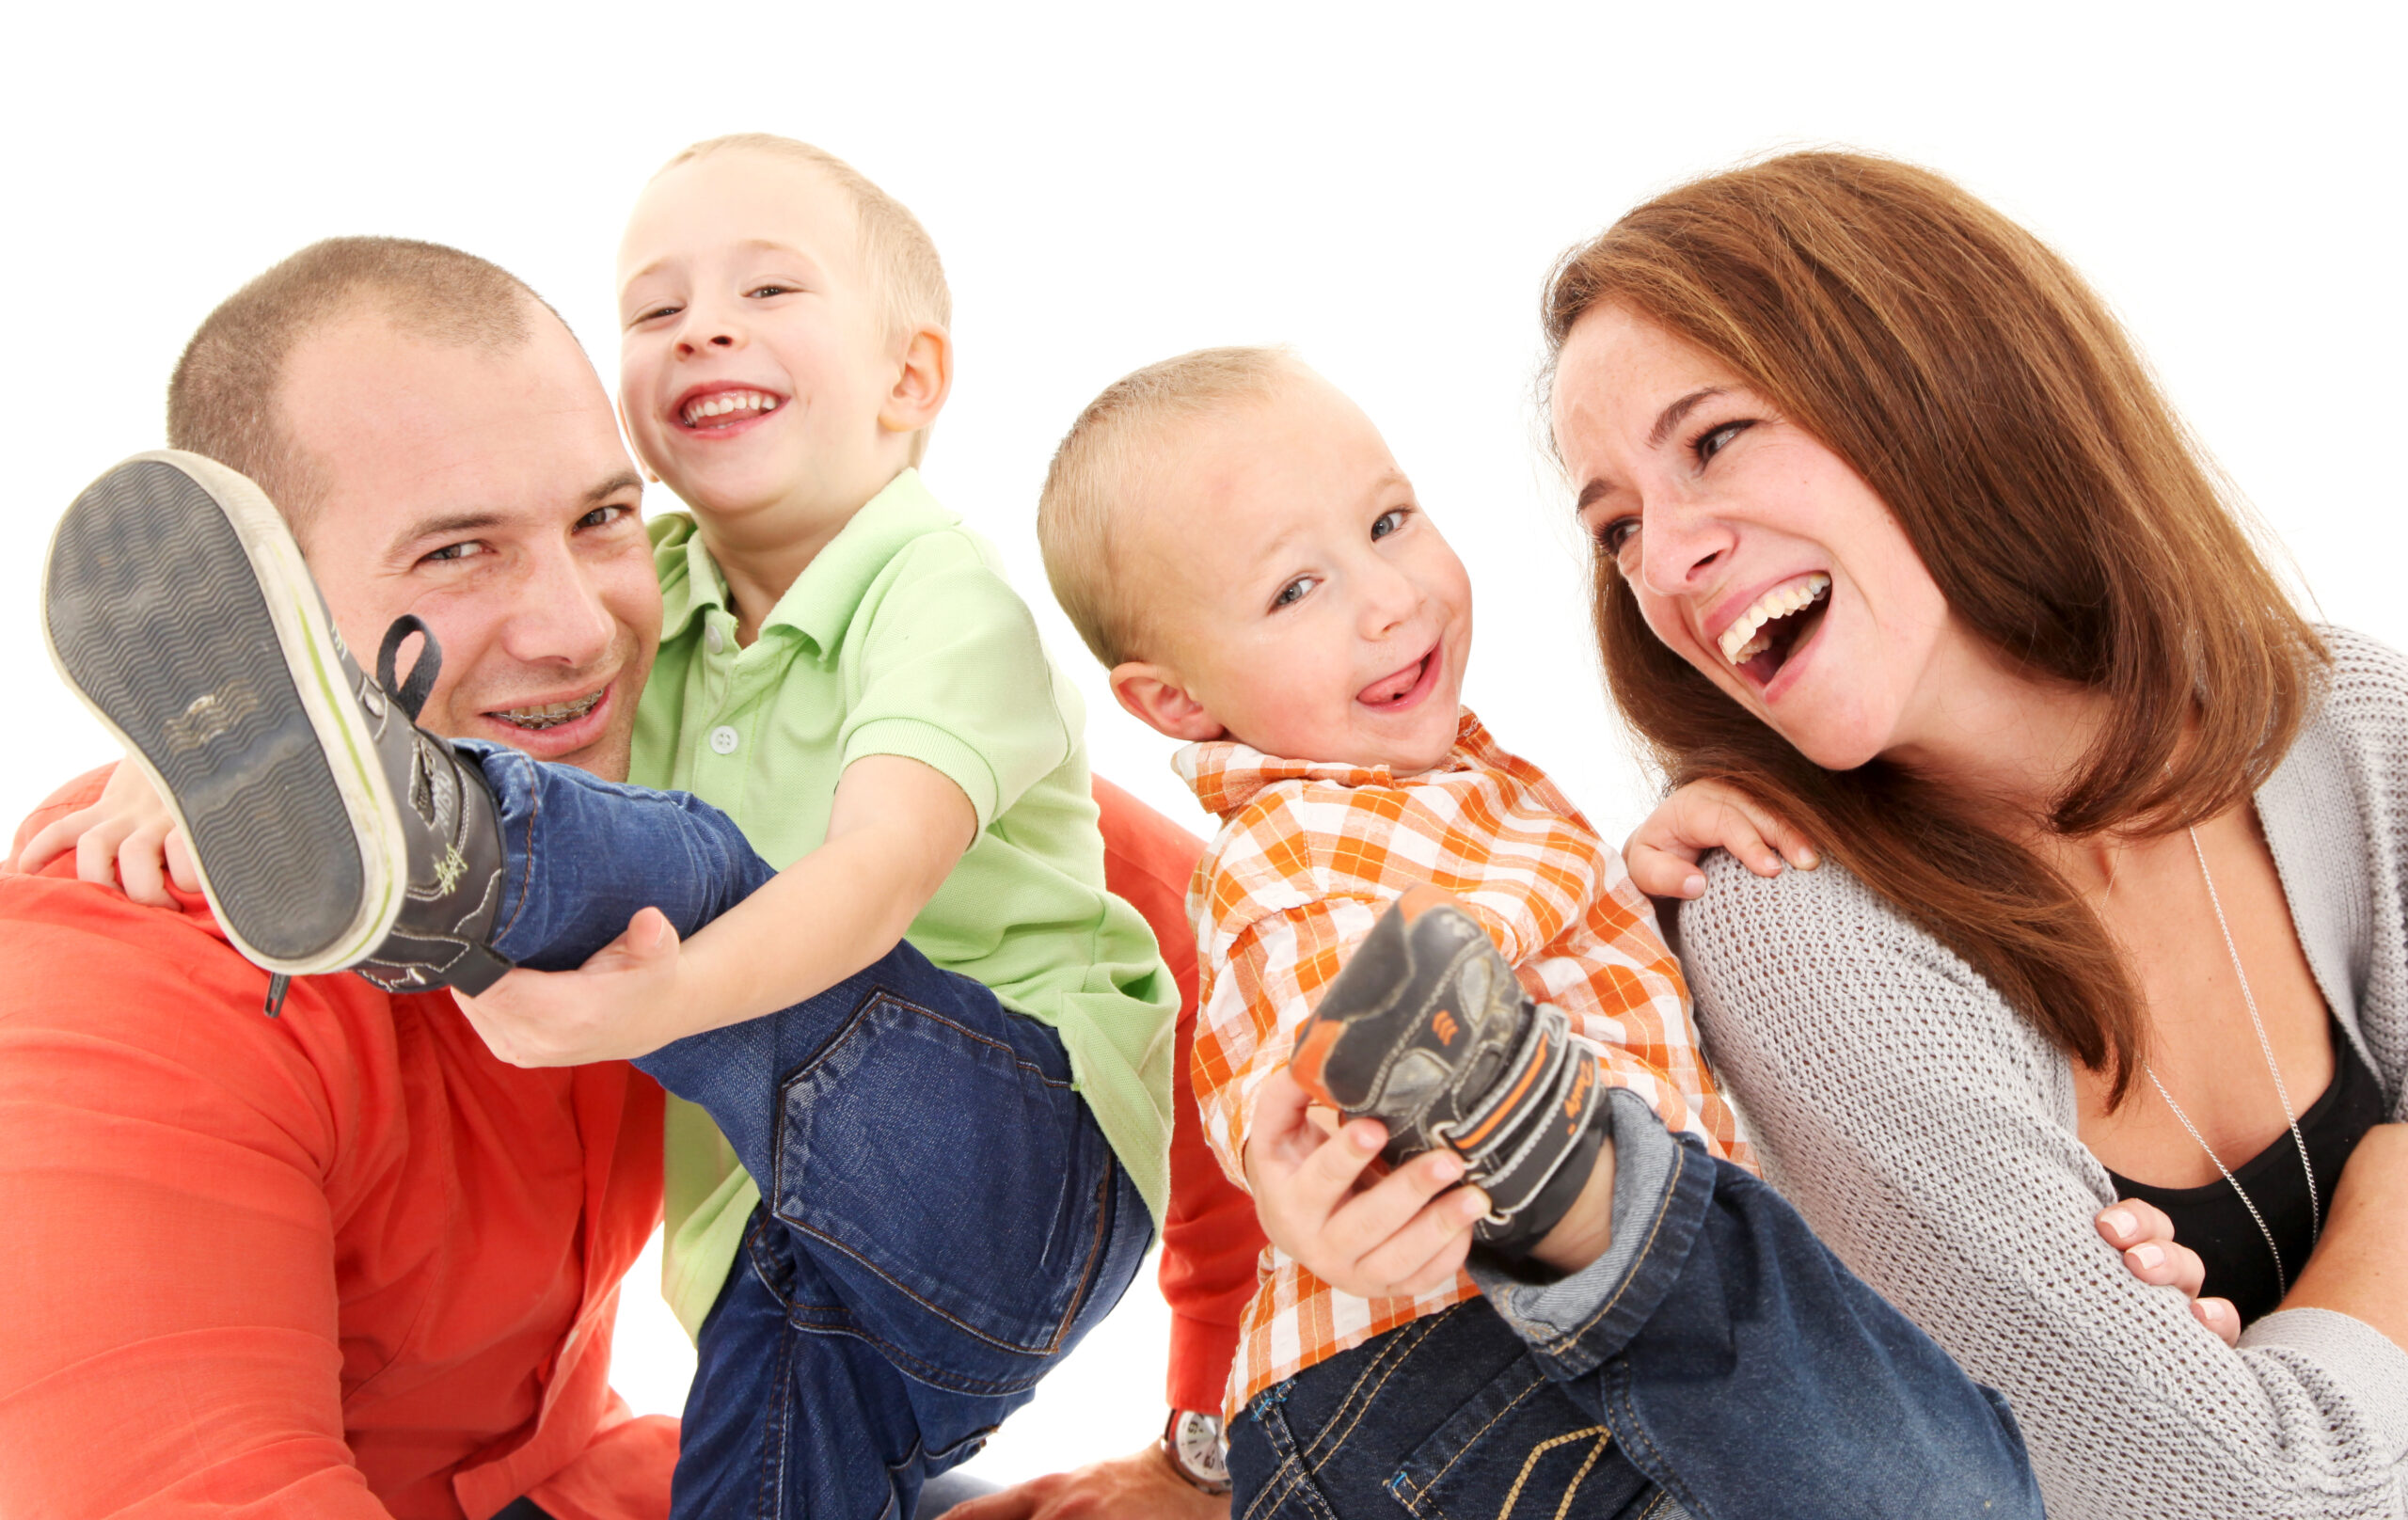 Eine fröhliche Familie spielt und lacht zusammen auf einem weißen Hintergrund.